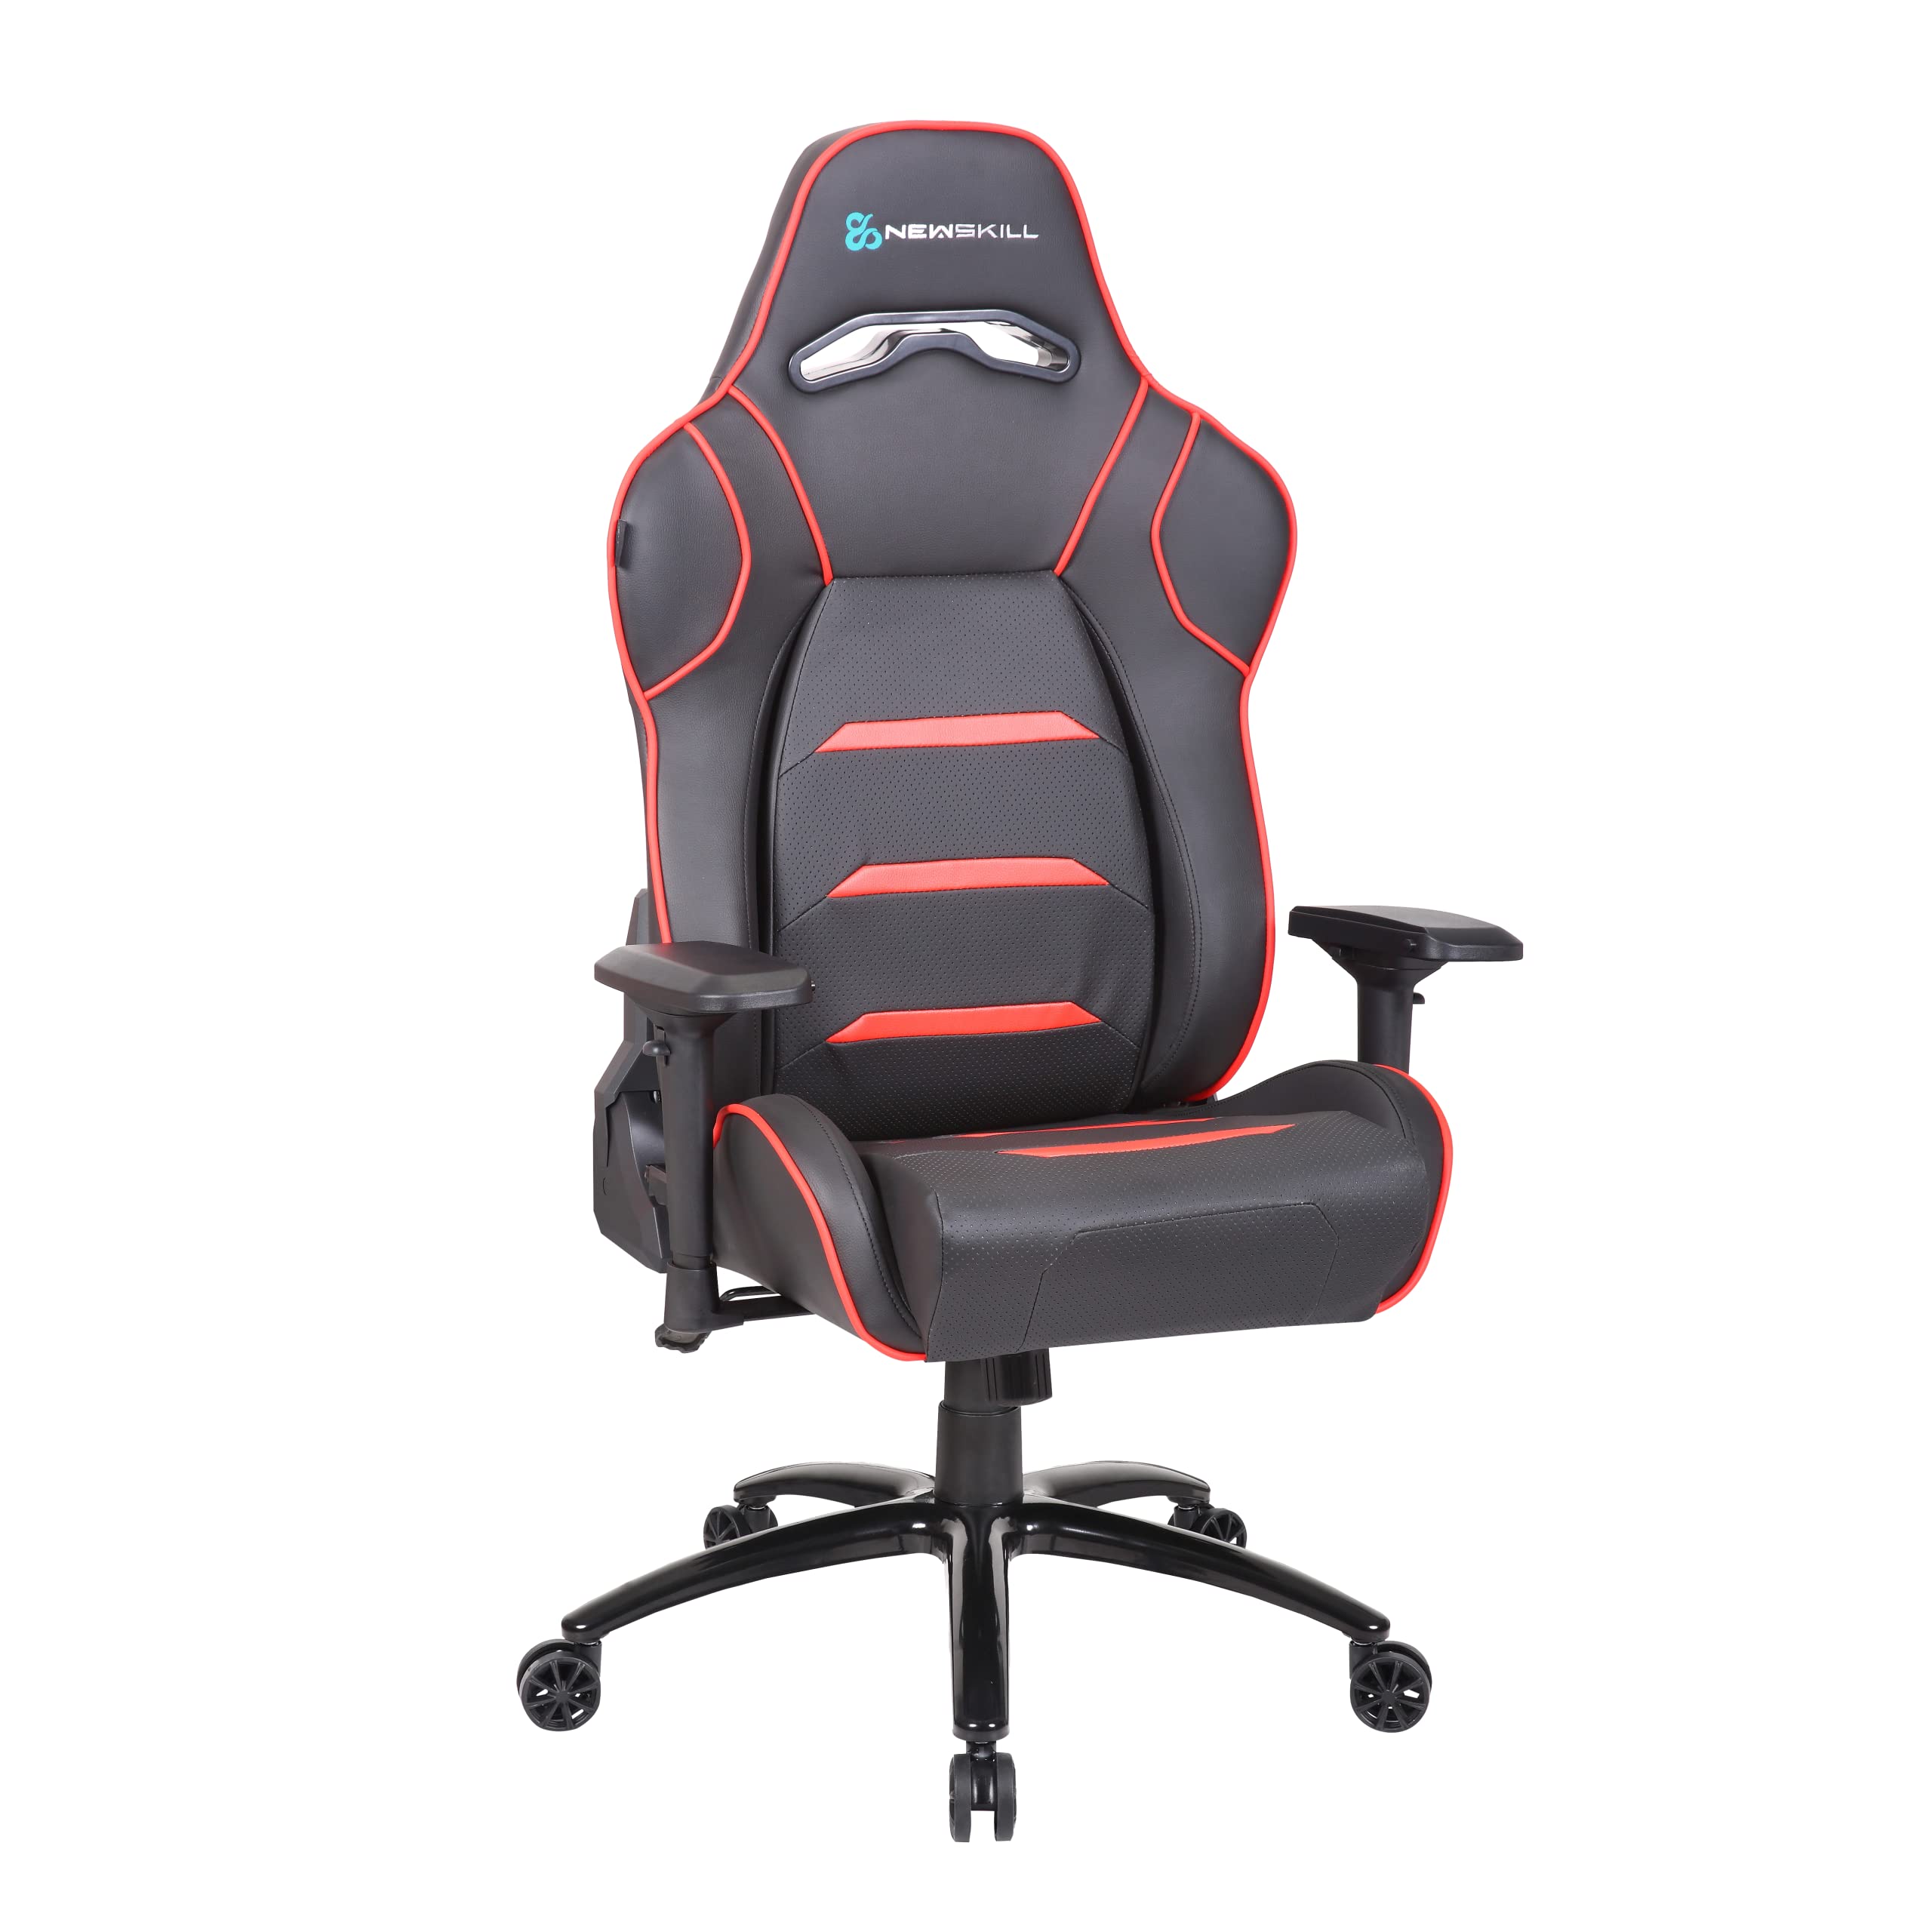 Newskill Valkyr Professioneller Gaming-Stuhl mit mikroperforierter Sitzfläche für EIN besseres Wärmegefühl (180 Grad Wipp- und Neige-System, 4D-Armlehnen, Rot